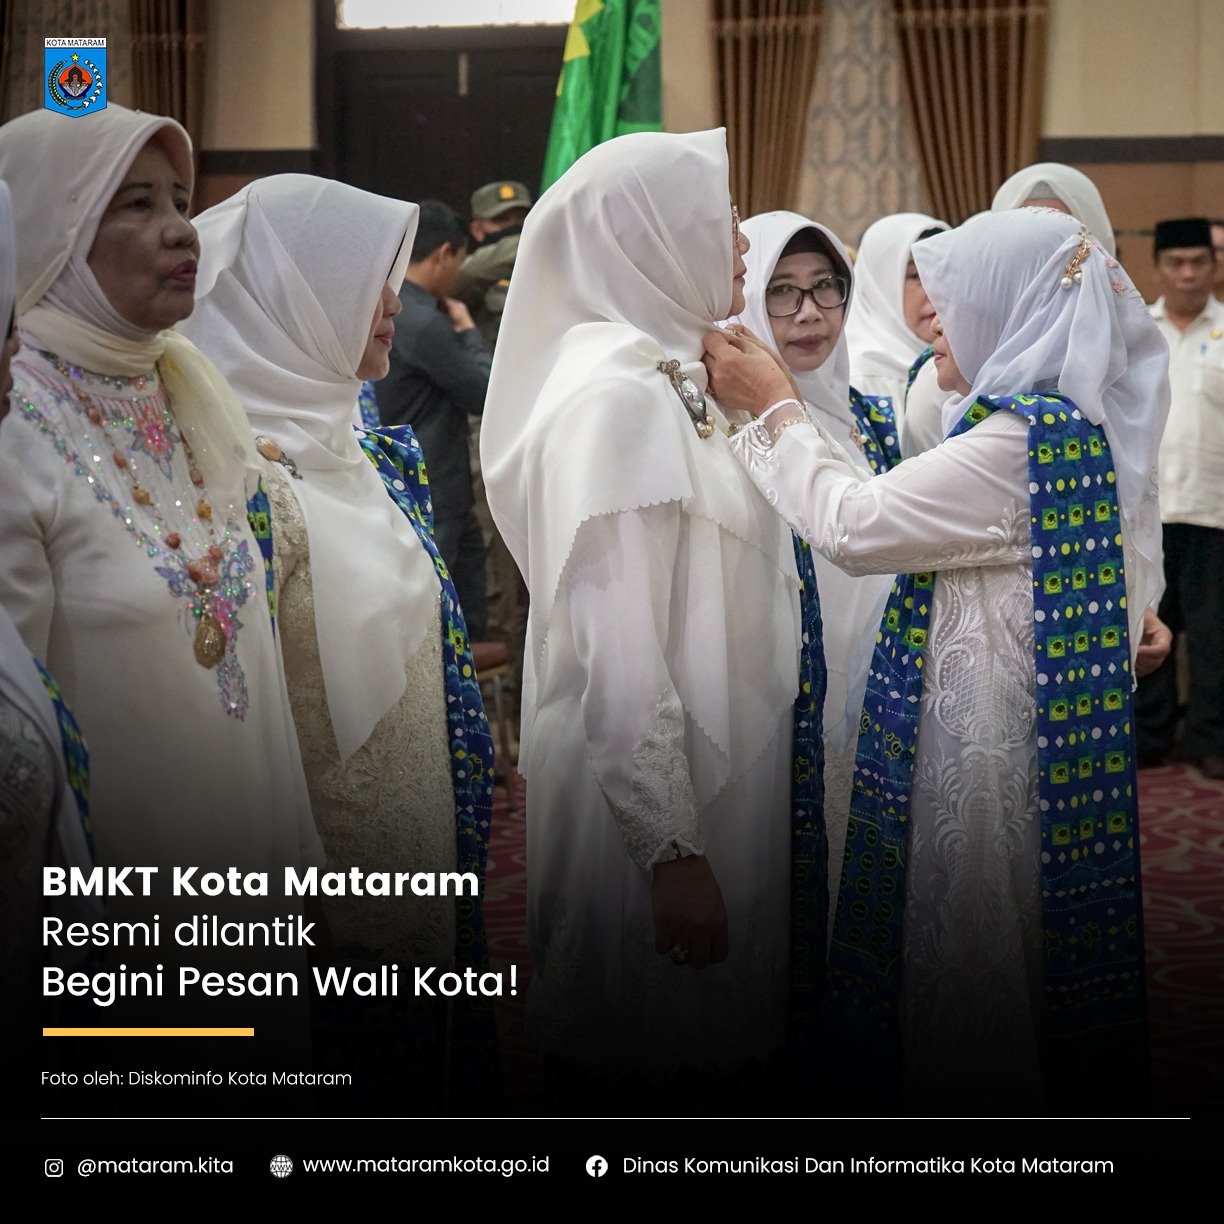 BKMT Kota Mataram Resmi dilantik, Begini Pesan Wali Kota